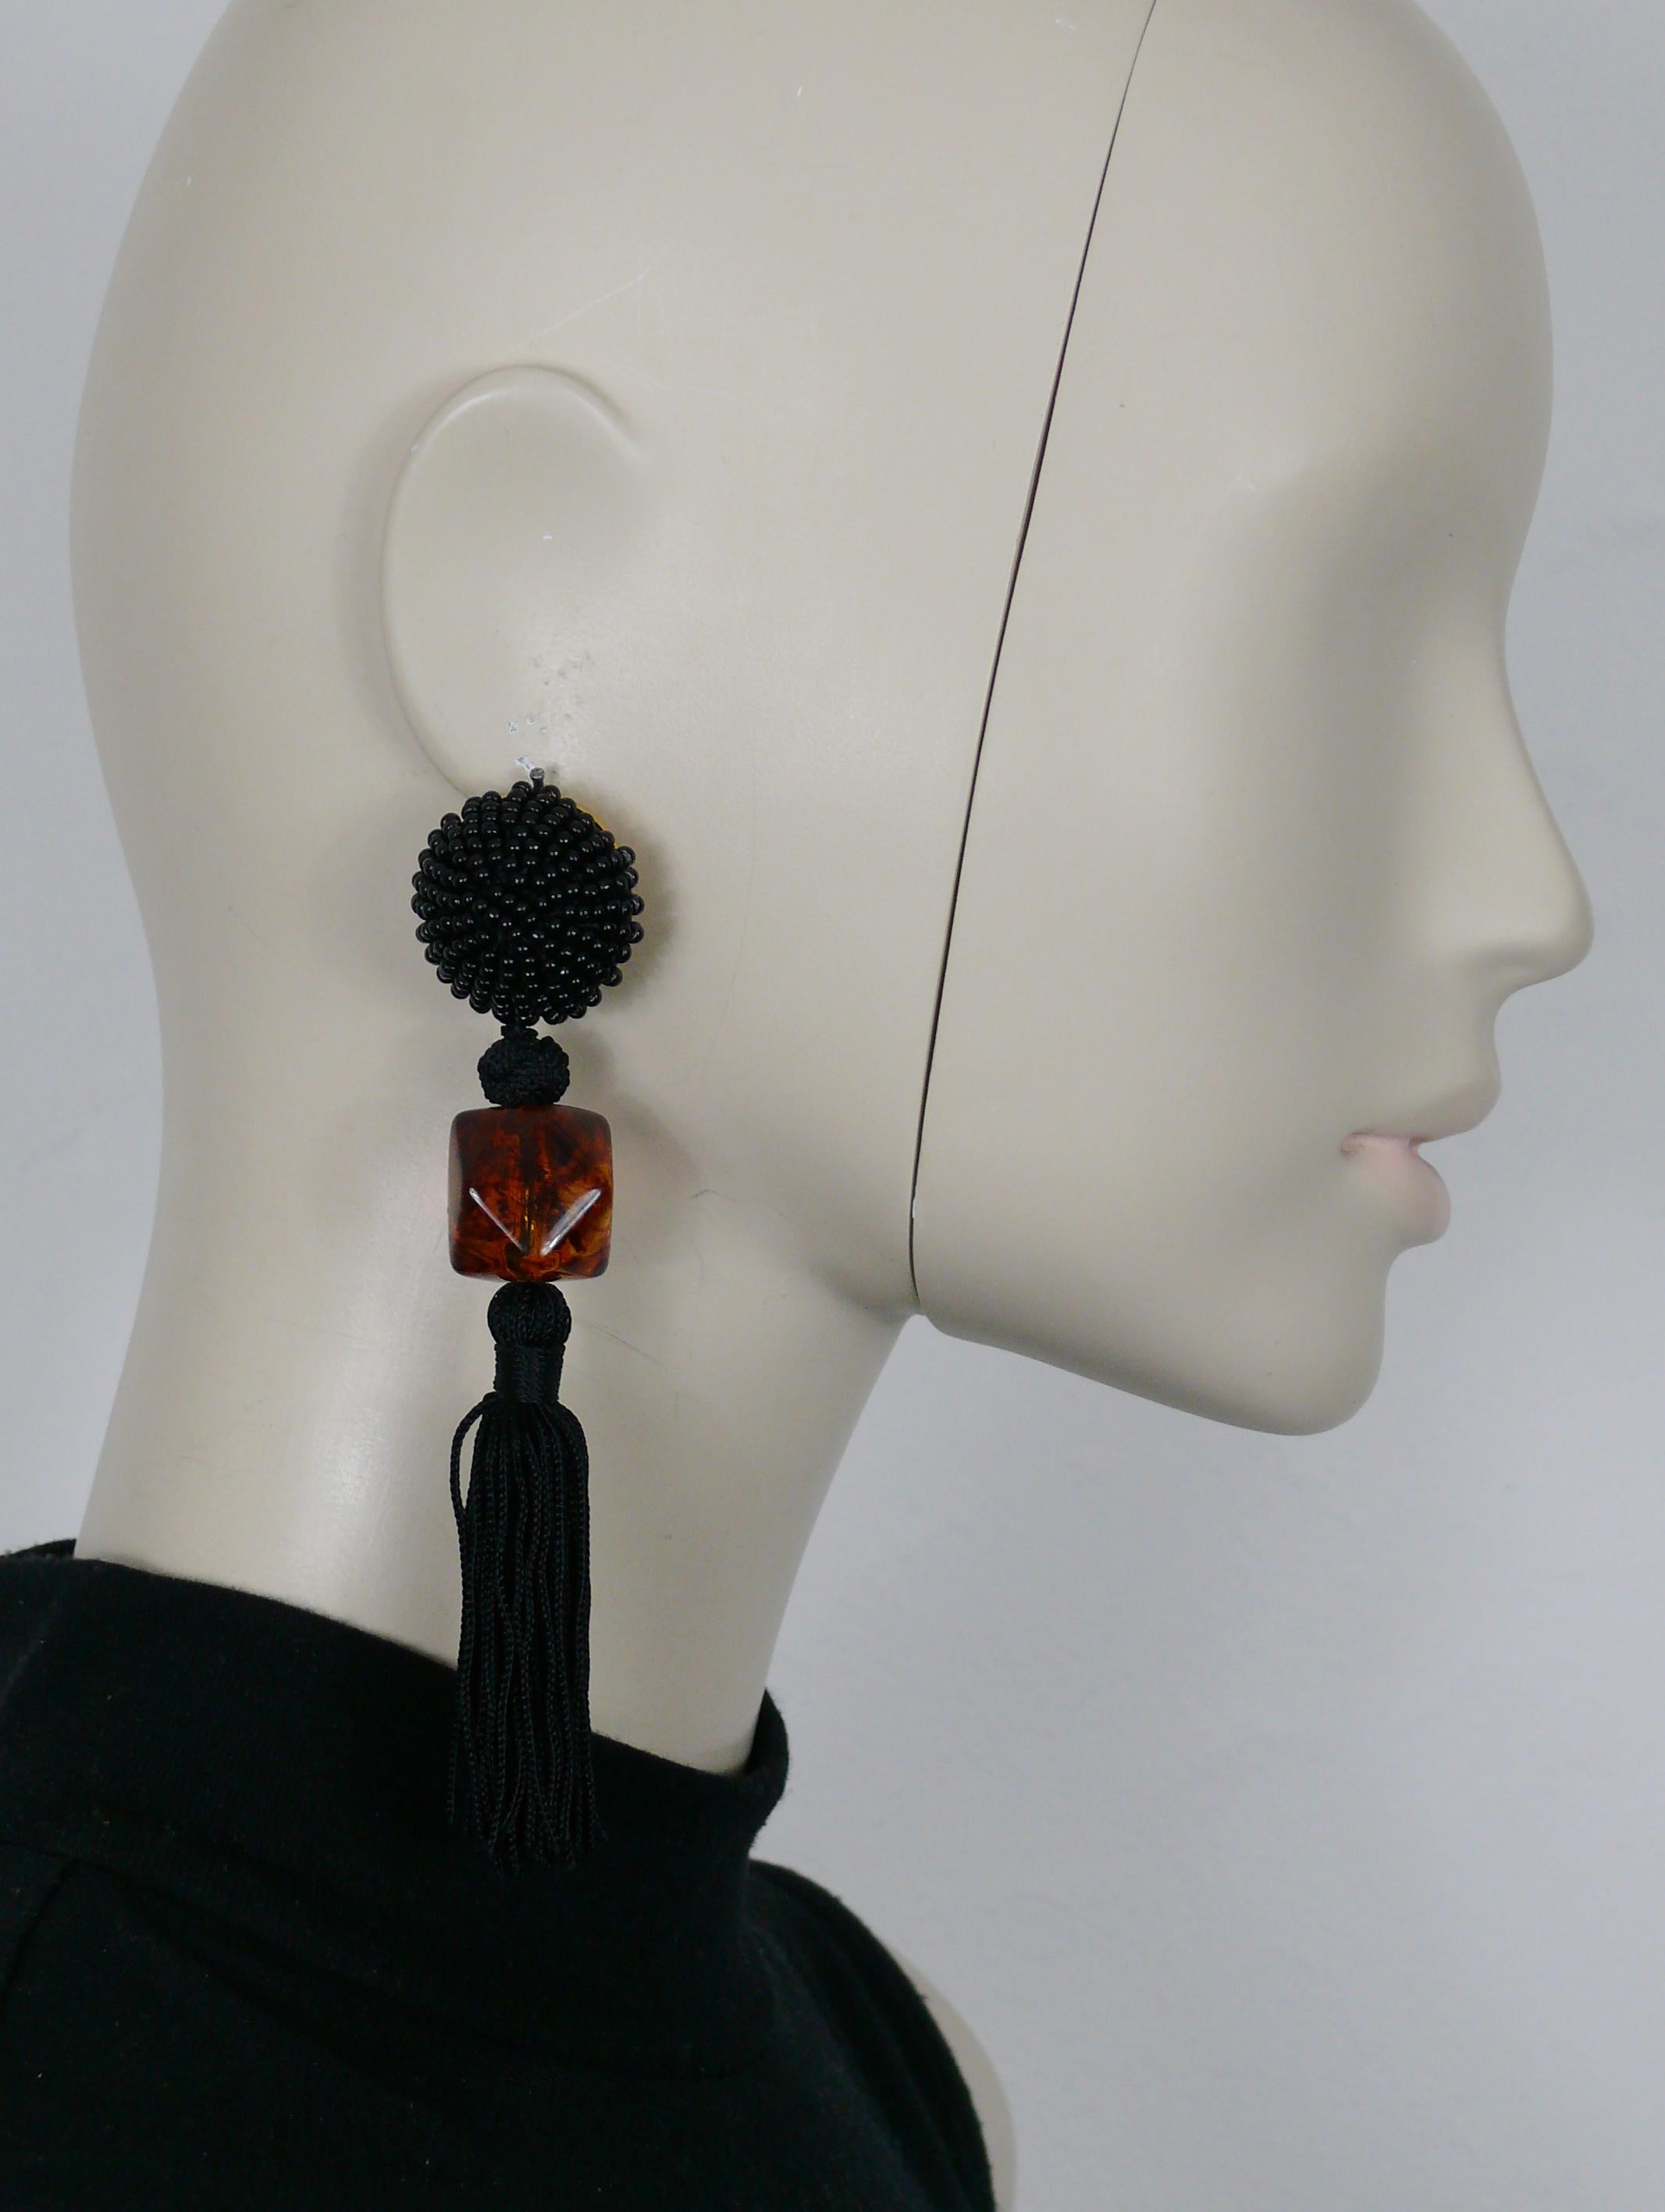 Boucles d'oreilles pendantes (clip-on) vintage d'Yves SAINT LAURENT, composées d'un top en perles noires, d'une grosse perle en résine multifacette et d'une pampille en passementerie noire.

Gaufrage YSL Made in France.

Mesures indicatives :